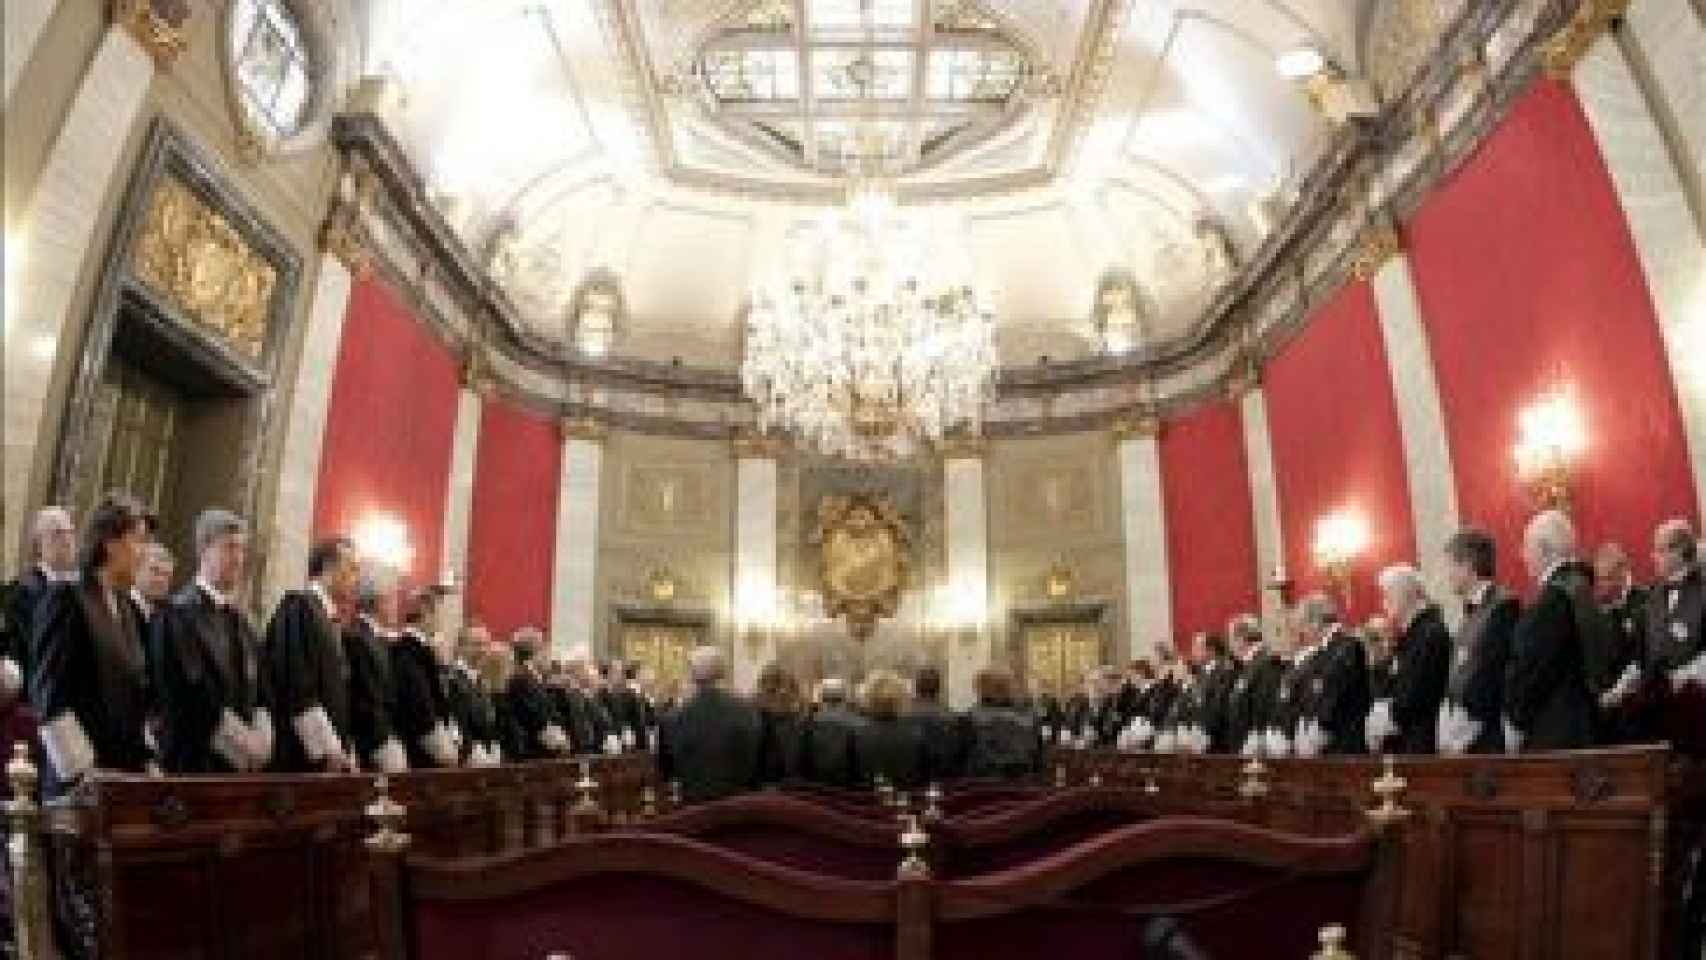 Reunión de magistrados en el salón de plenos del Tribunal Supremo